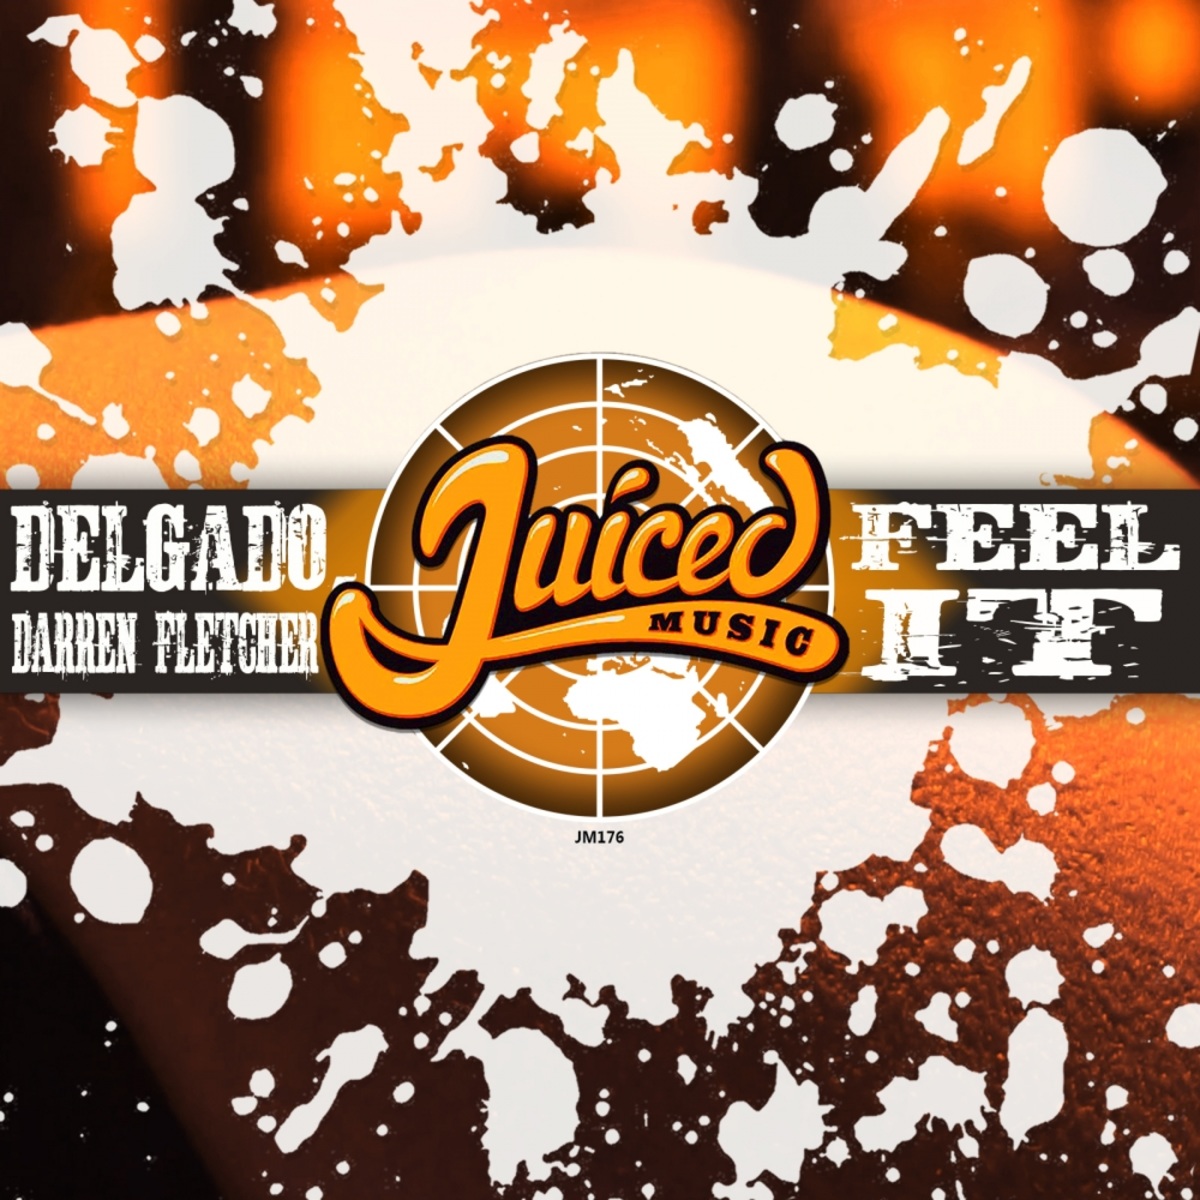 Delgado & Darren Fletcher - Feel It / Juiced Music